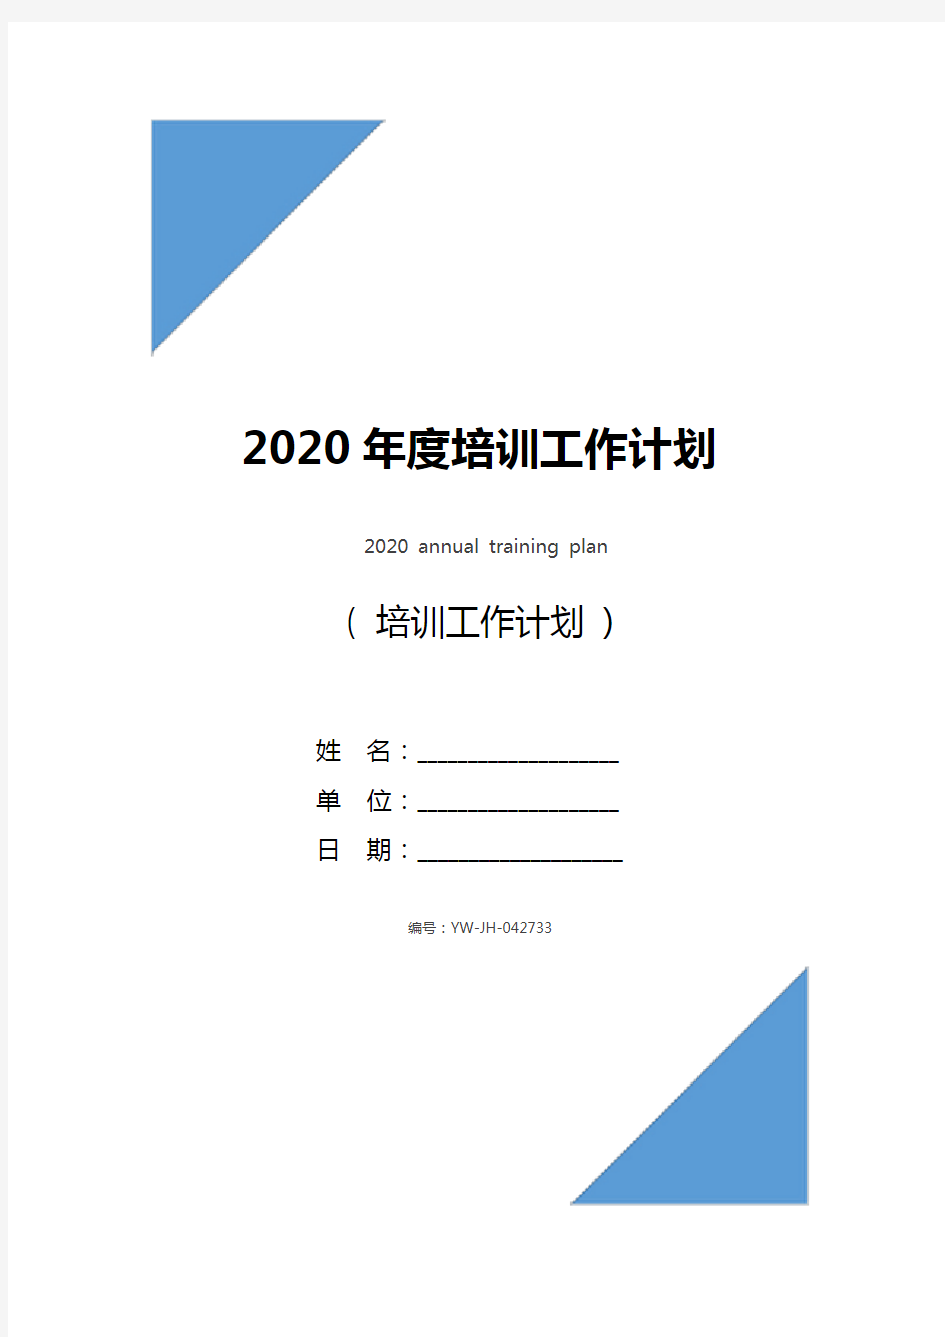 2020年度培训工作计划